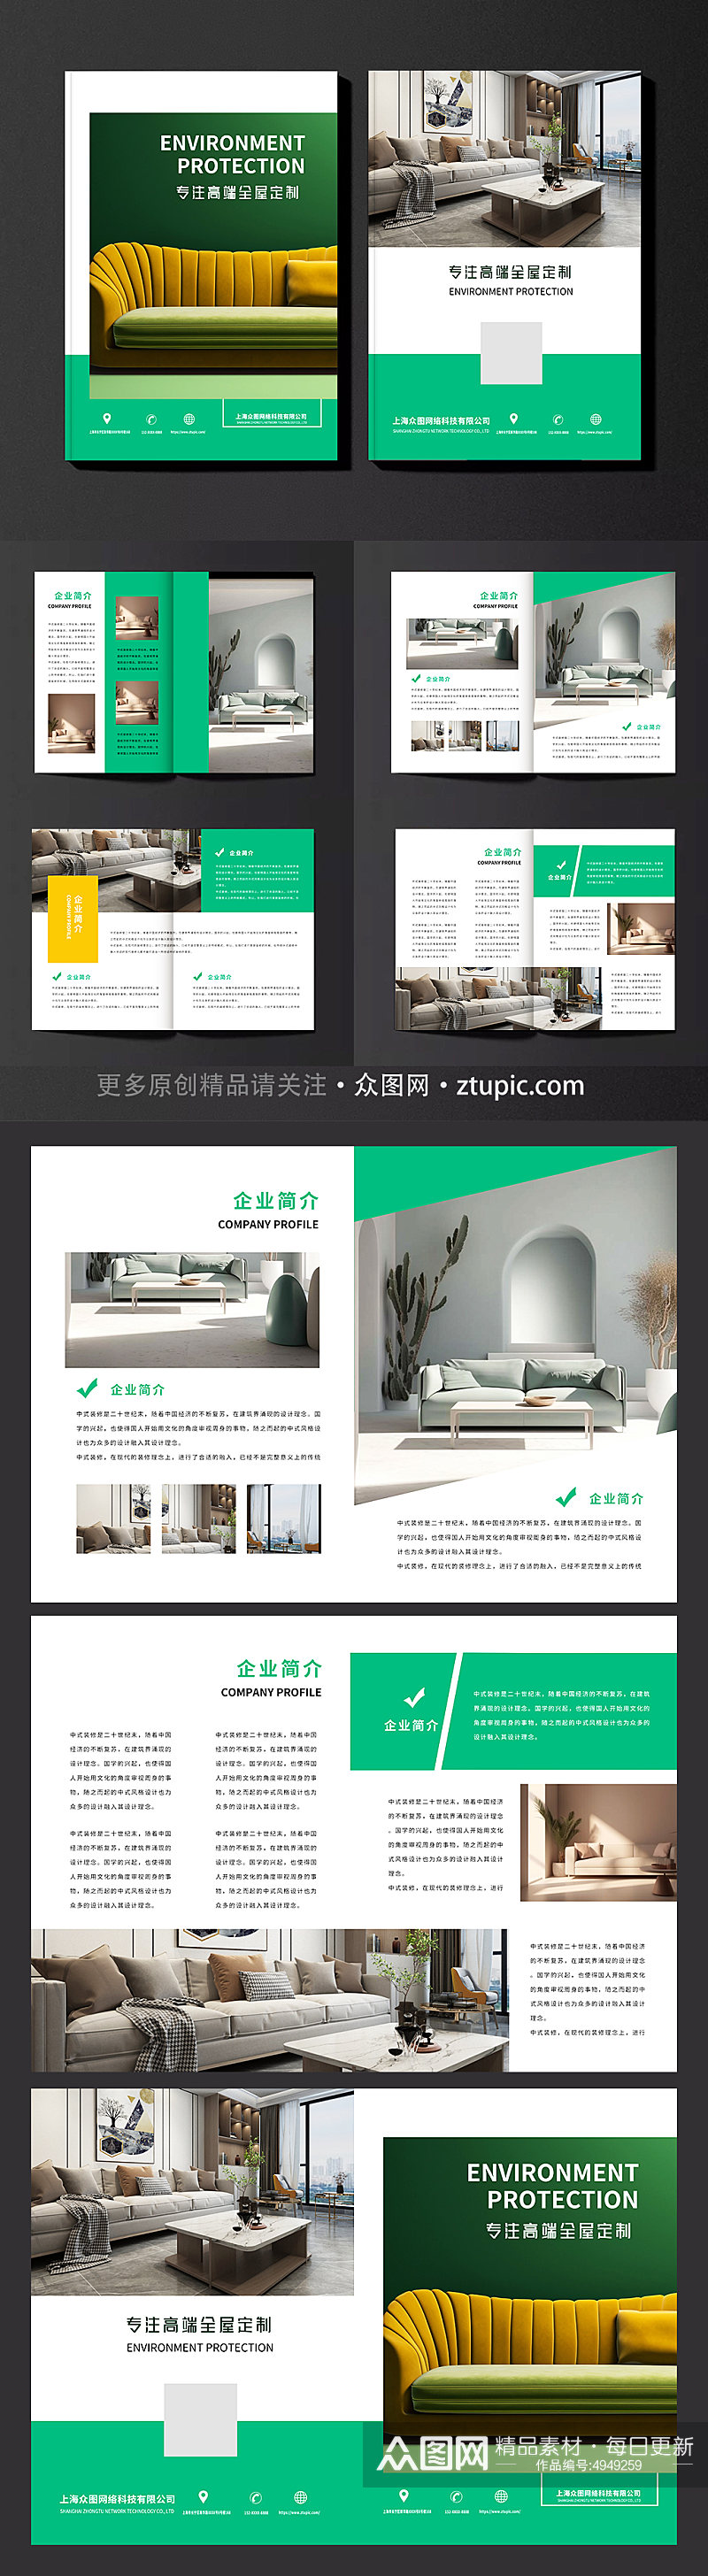 绿色清新装修装饰公司家装家居室内设计画册素材